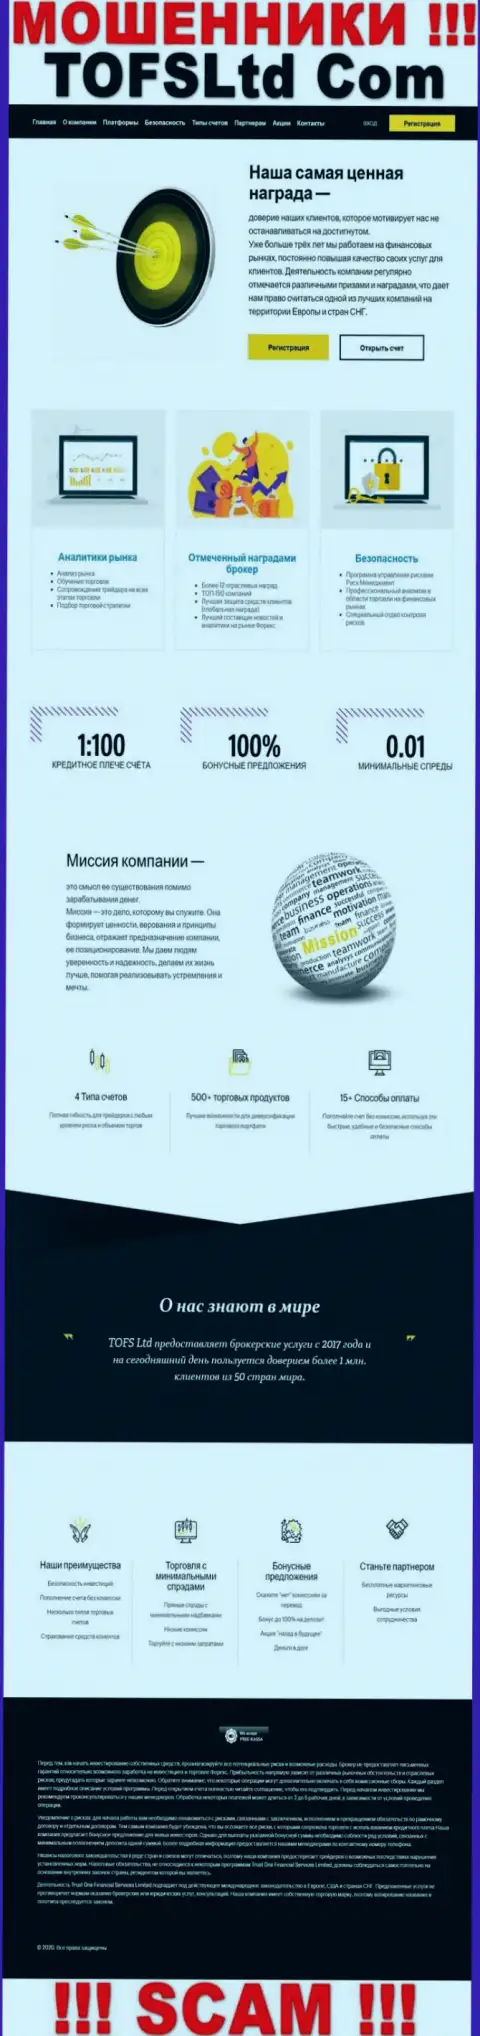 Информационный сервис мошеннической конторы TOFSLtd Com - ТофсЛтд Ком